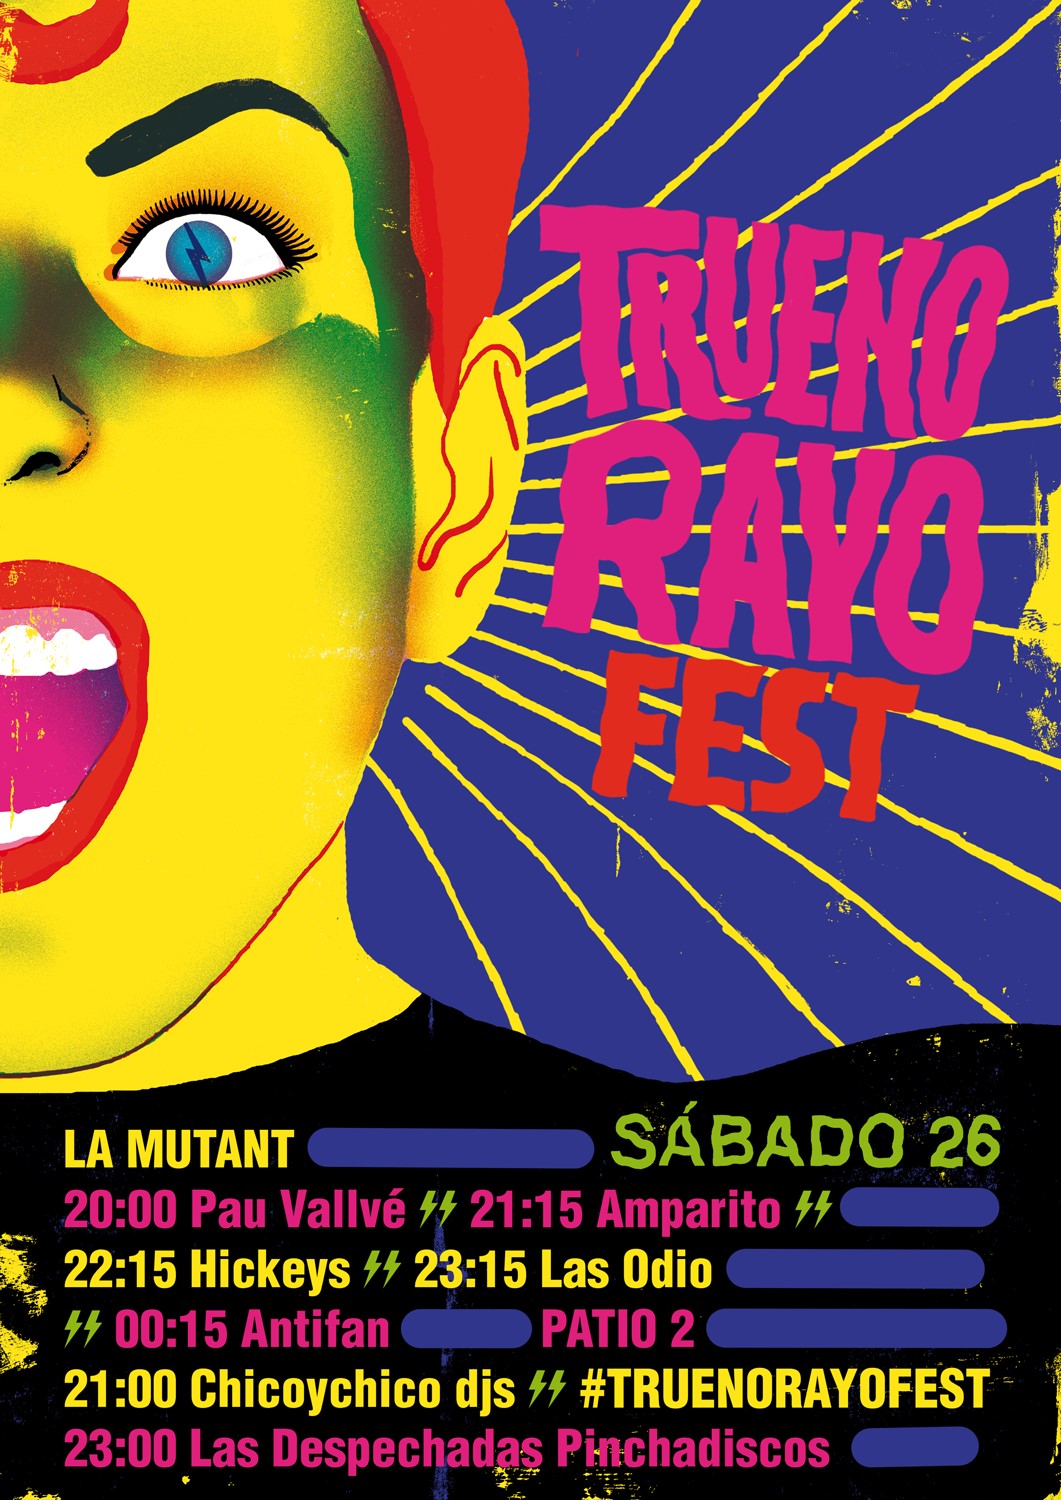 TruenoRayo Fest